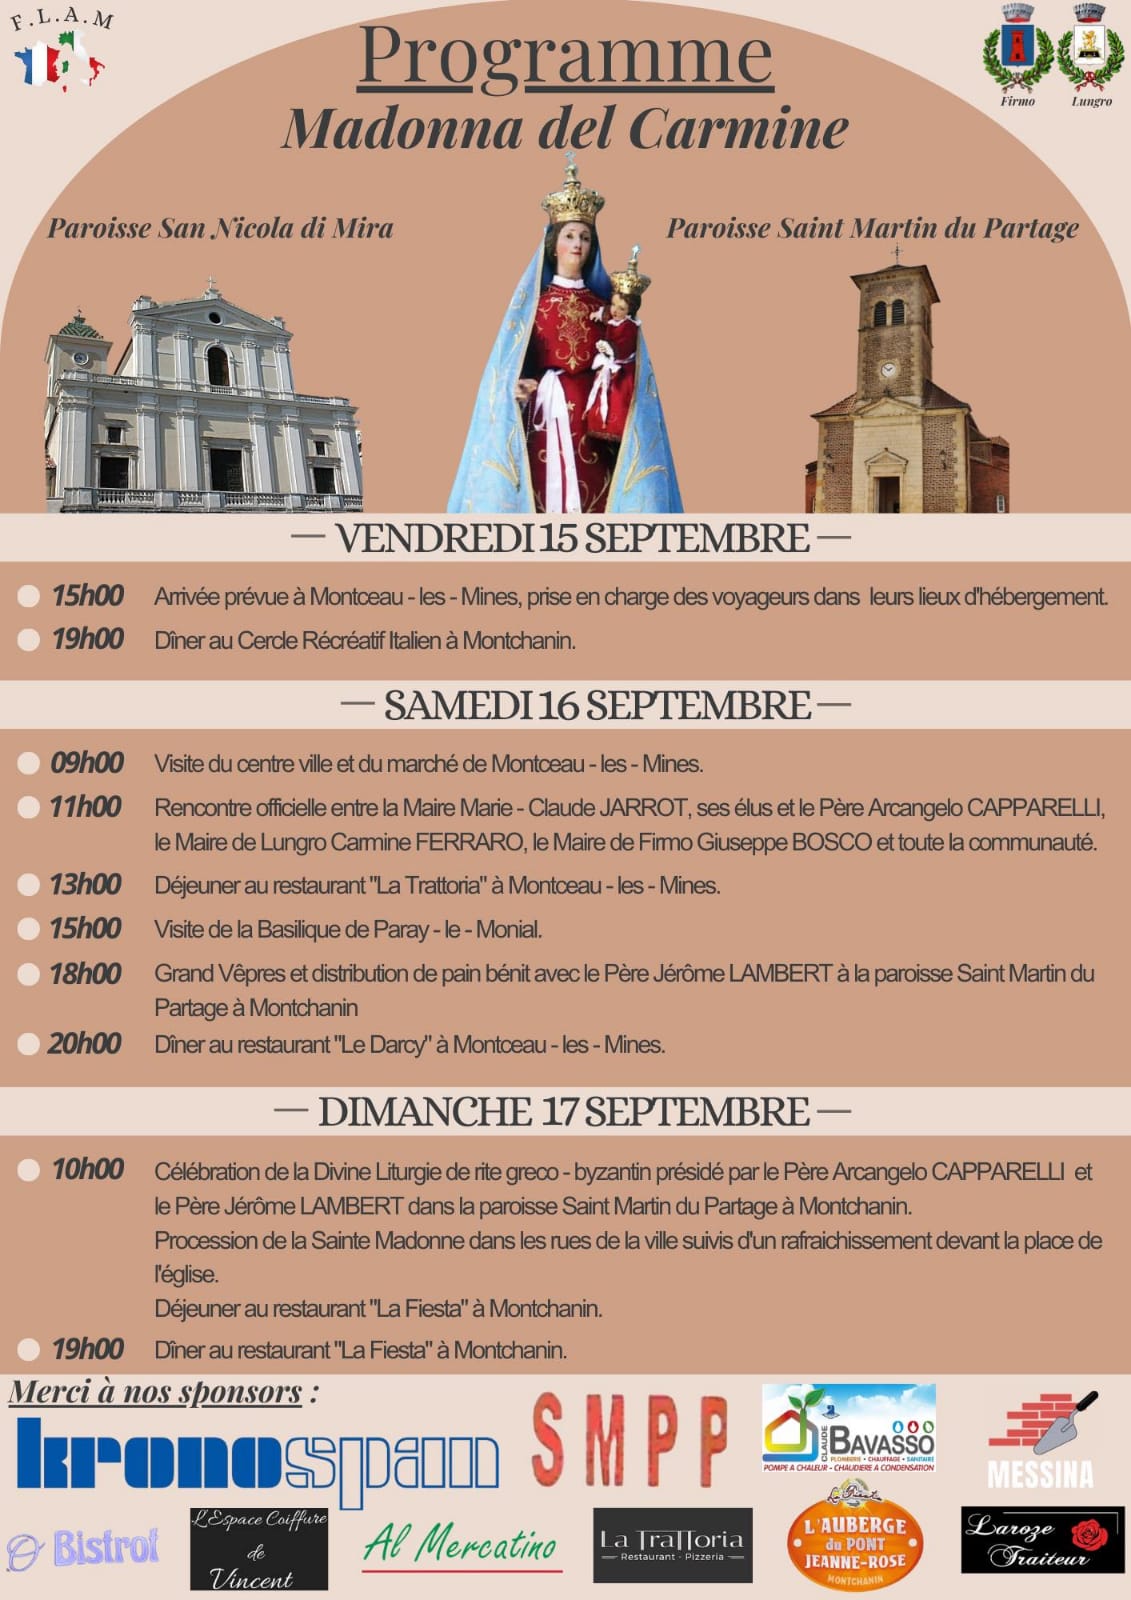 Comitato Gemellaggio “FLAM”: la “Madonna del Carmine” salperà dall’Italia verso il bacino minerario nel weekend del 16 e 17 settembre – info-chalon.com